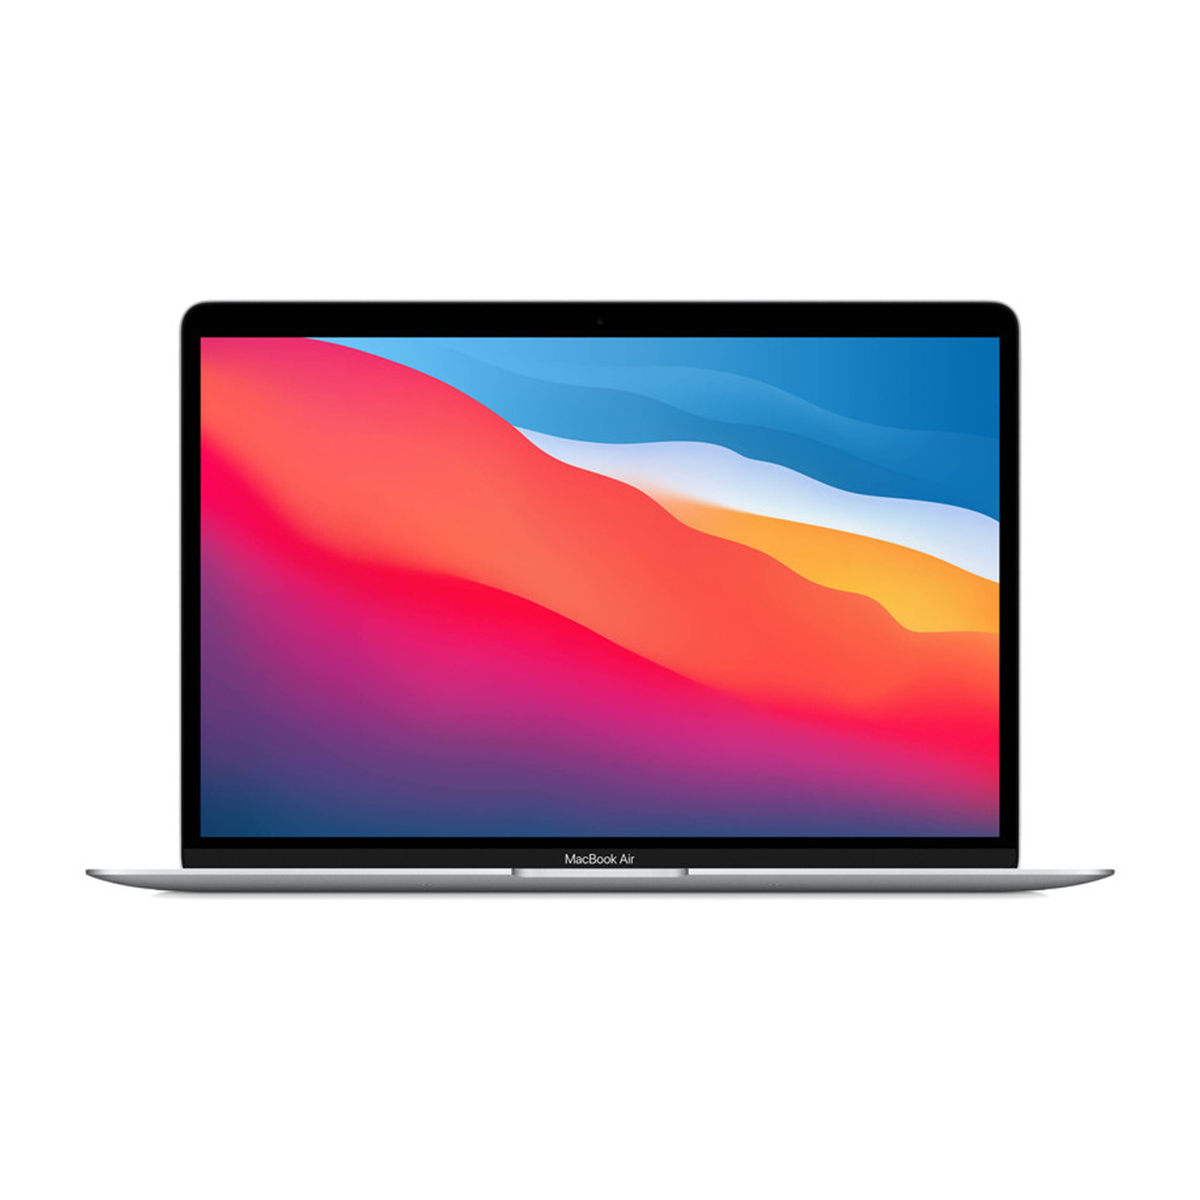  لپ تاپ 13 اینچی اپل مدل MacBook Air MGN93 2020-small-image